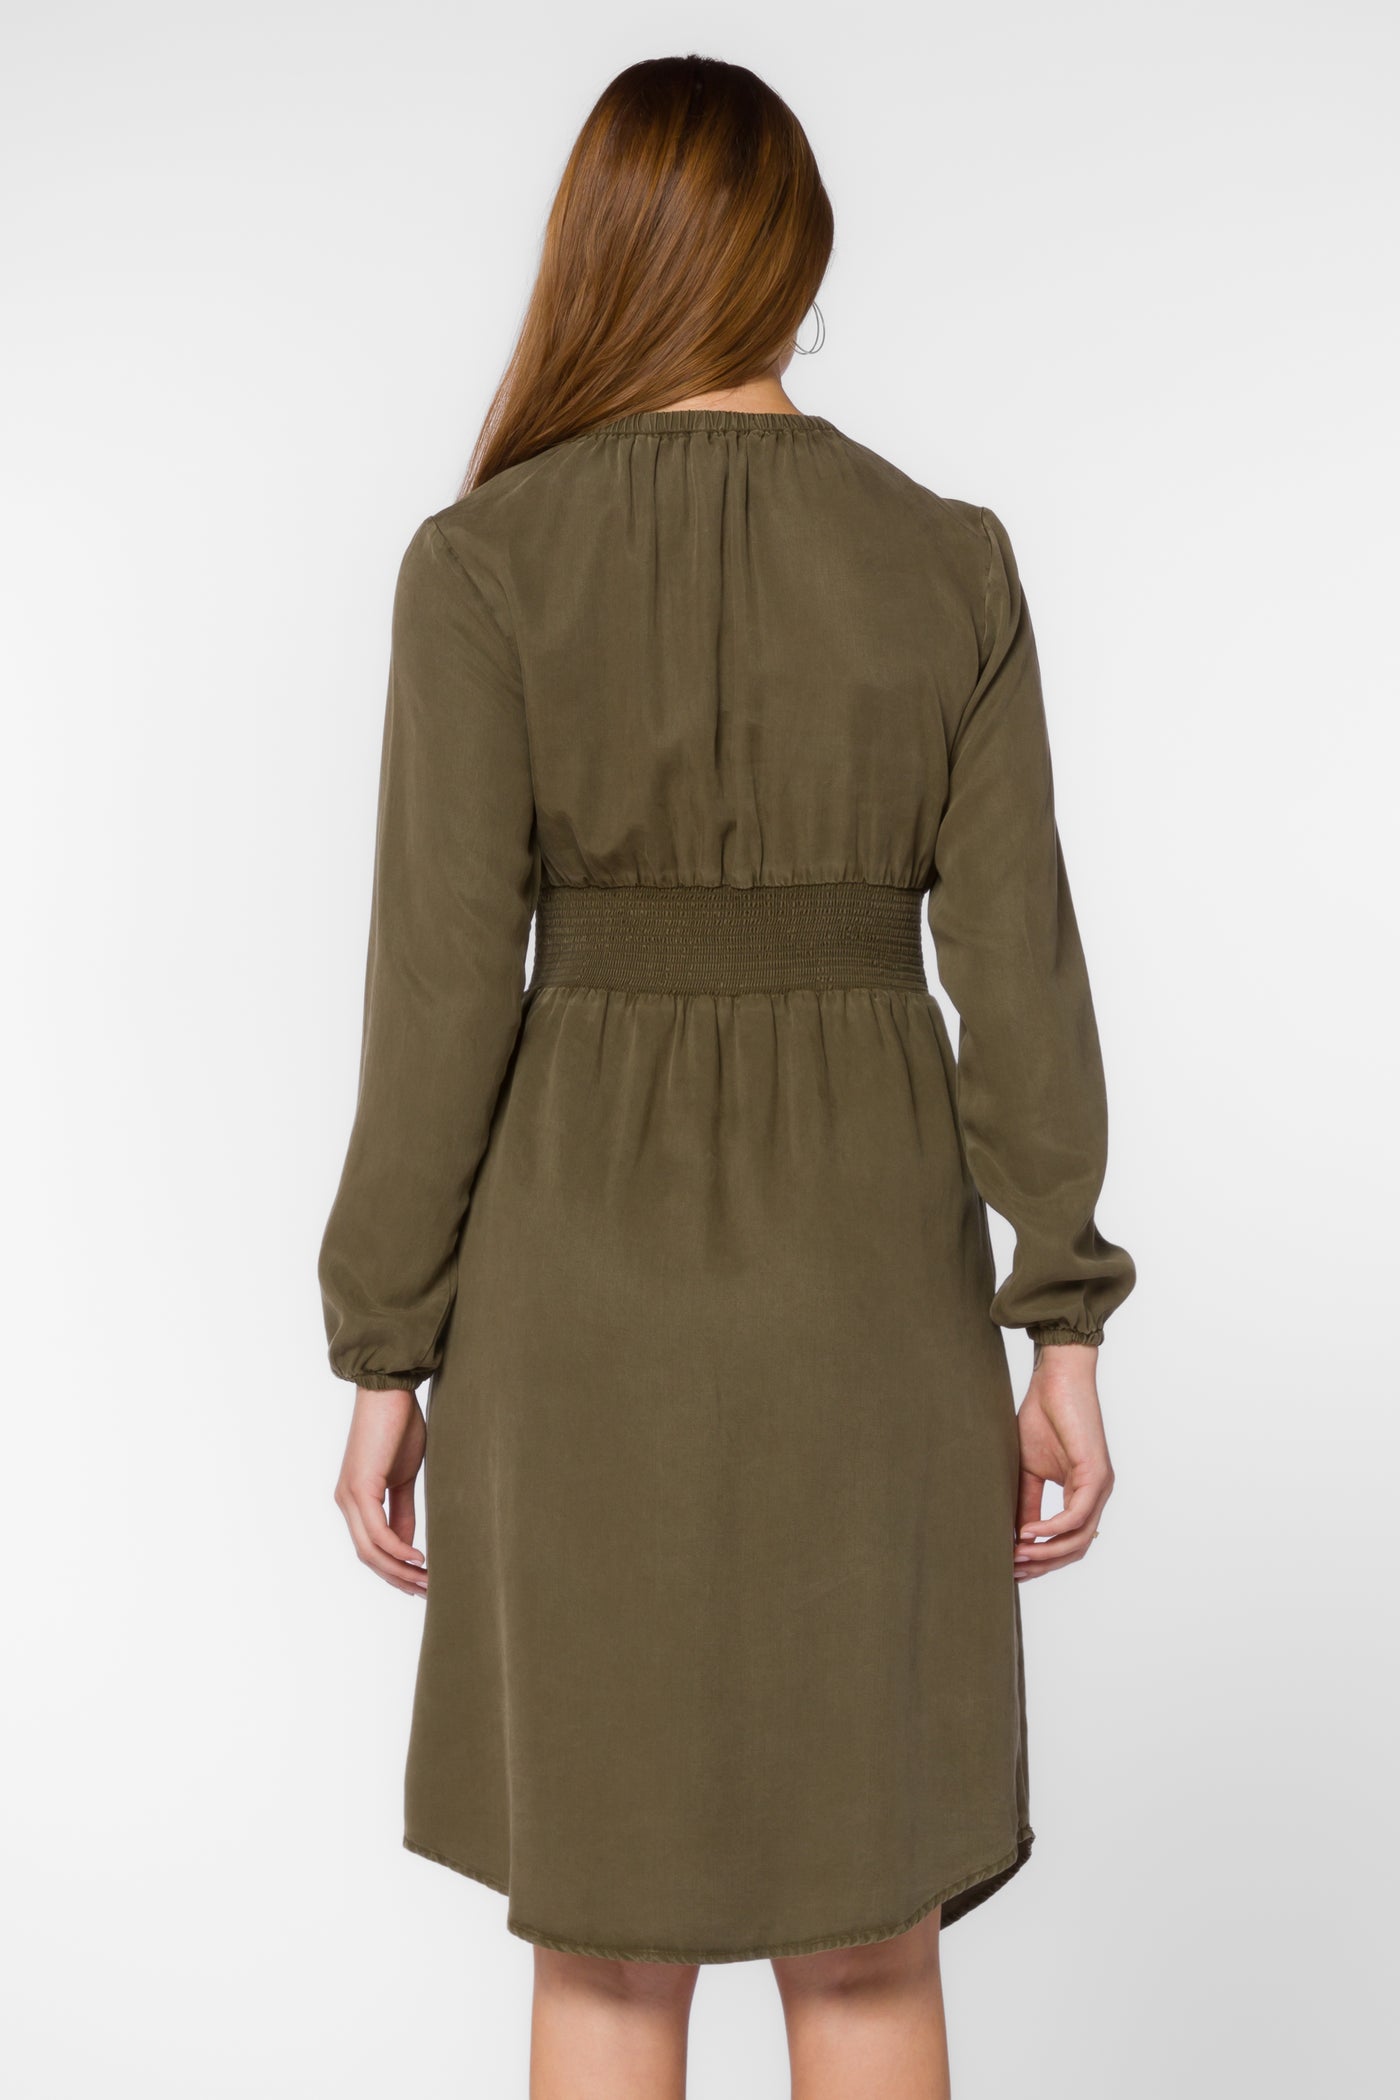 Clarita Olive Dress - Dresses - Velvet Heart Clothing